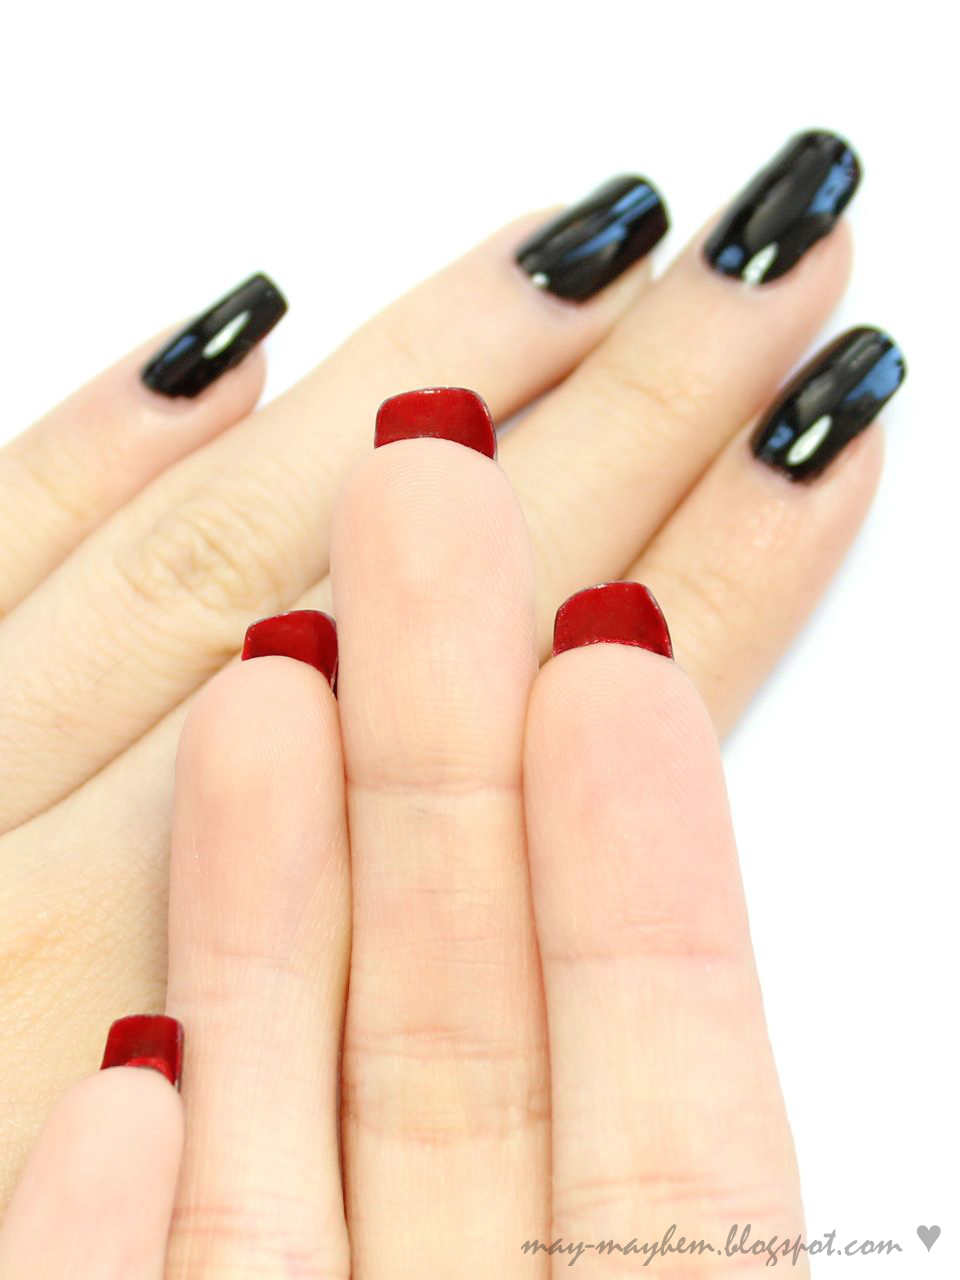 Маникюр одна черная другая. Маникюр красный с черным. Накрашенные ногти. Красные ногти на руках. Ногти разного цвета на руках.